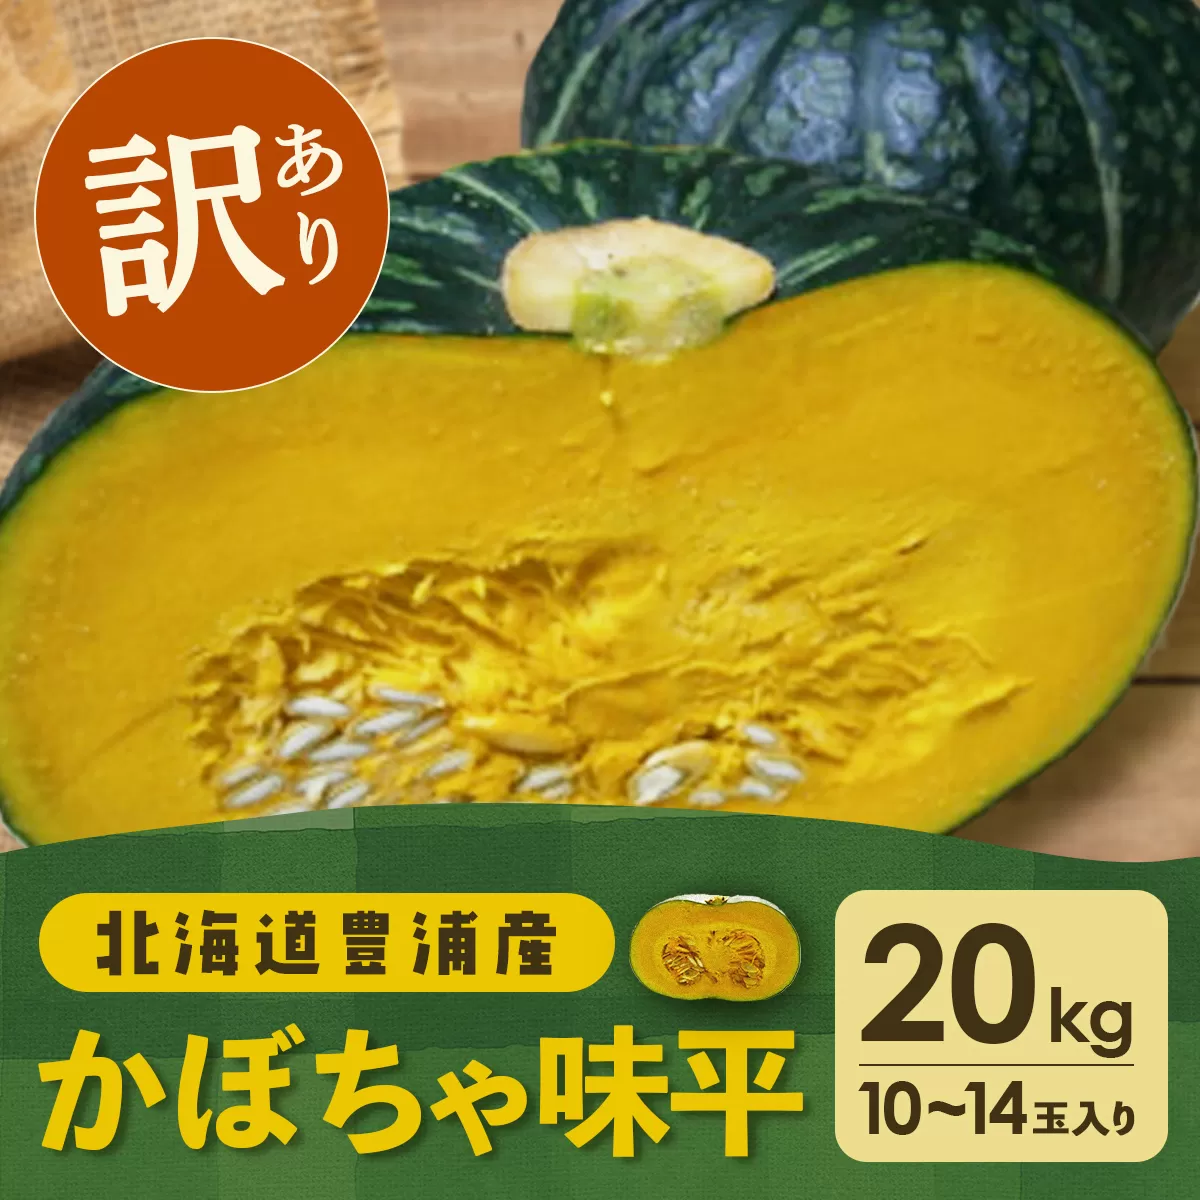 【訳あり】北海道 豊浦産 かぼちゃ 味平 20kg 10〜14玉入り TYUH007